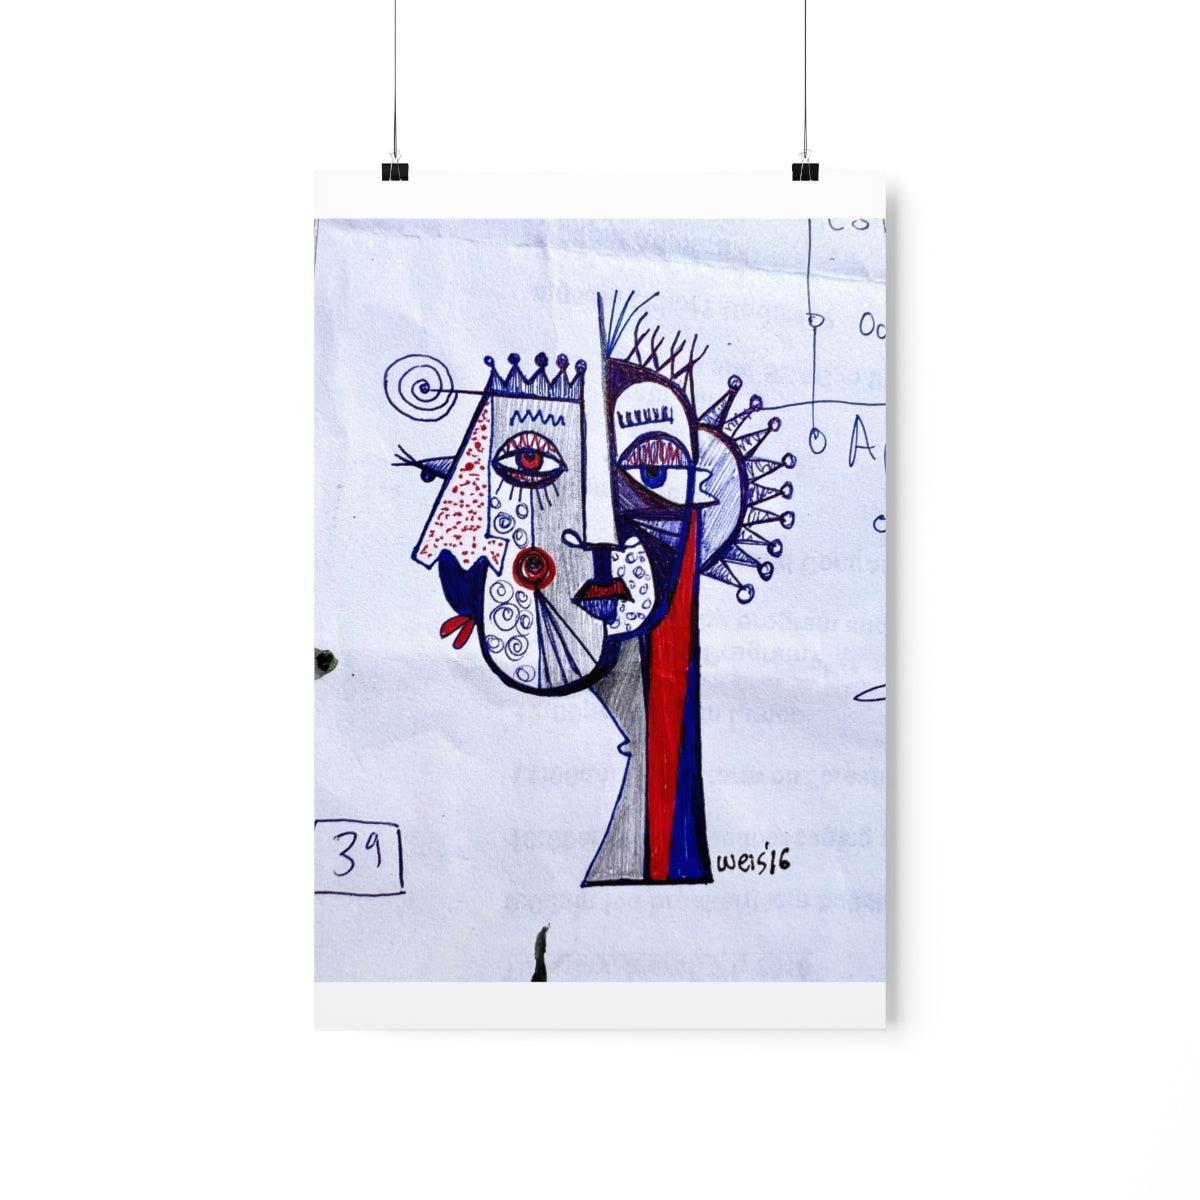 Conscious Lines #064 - Premium Matte Art Print